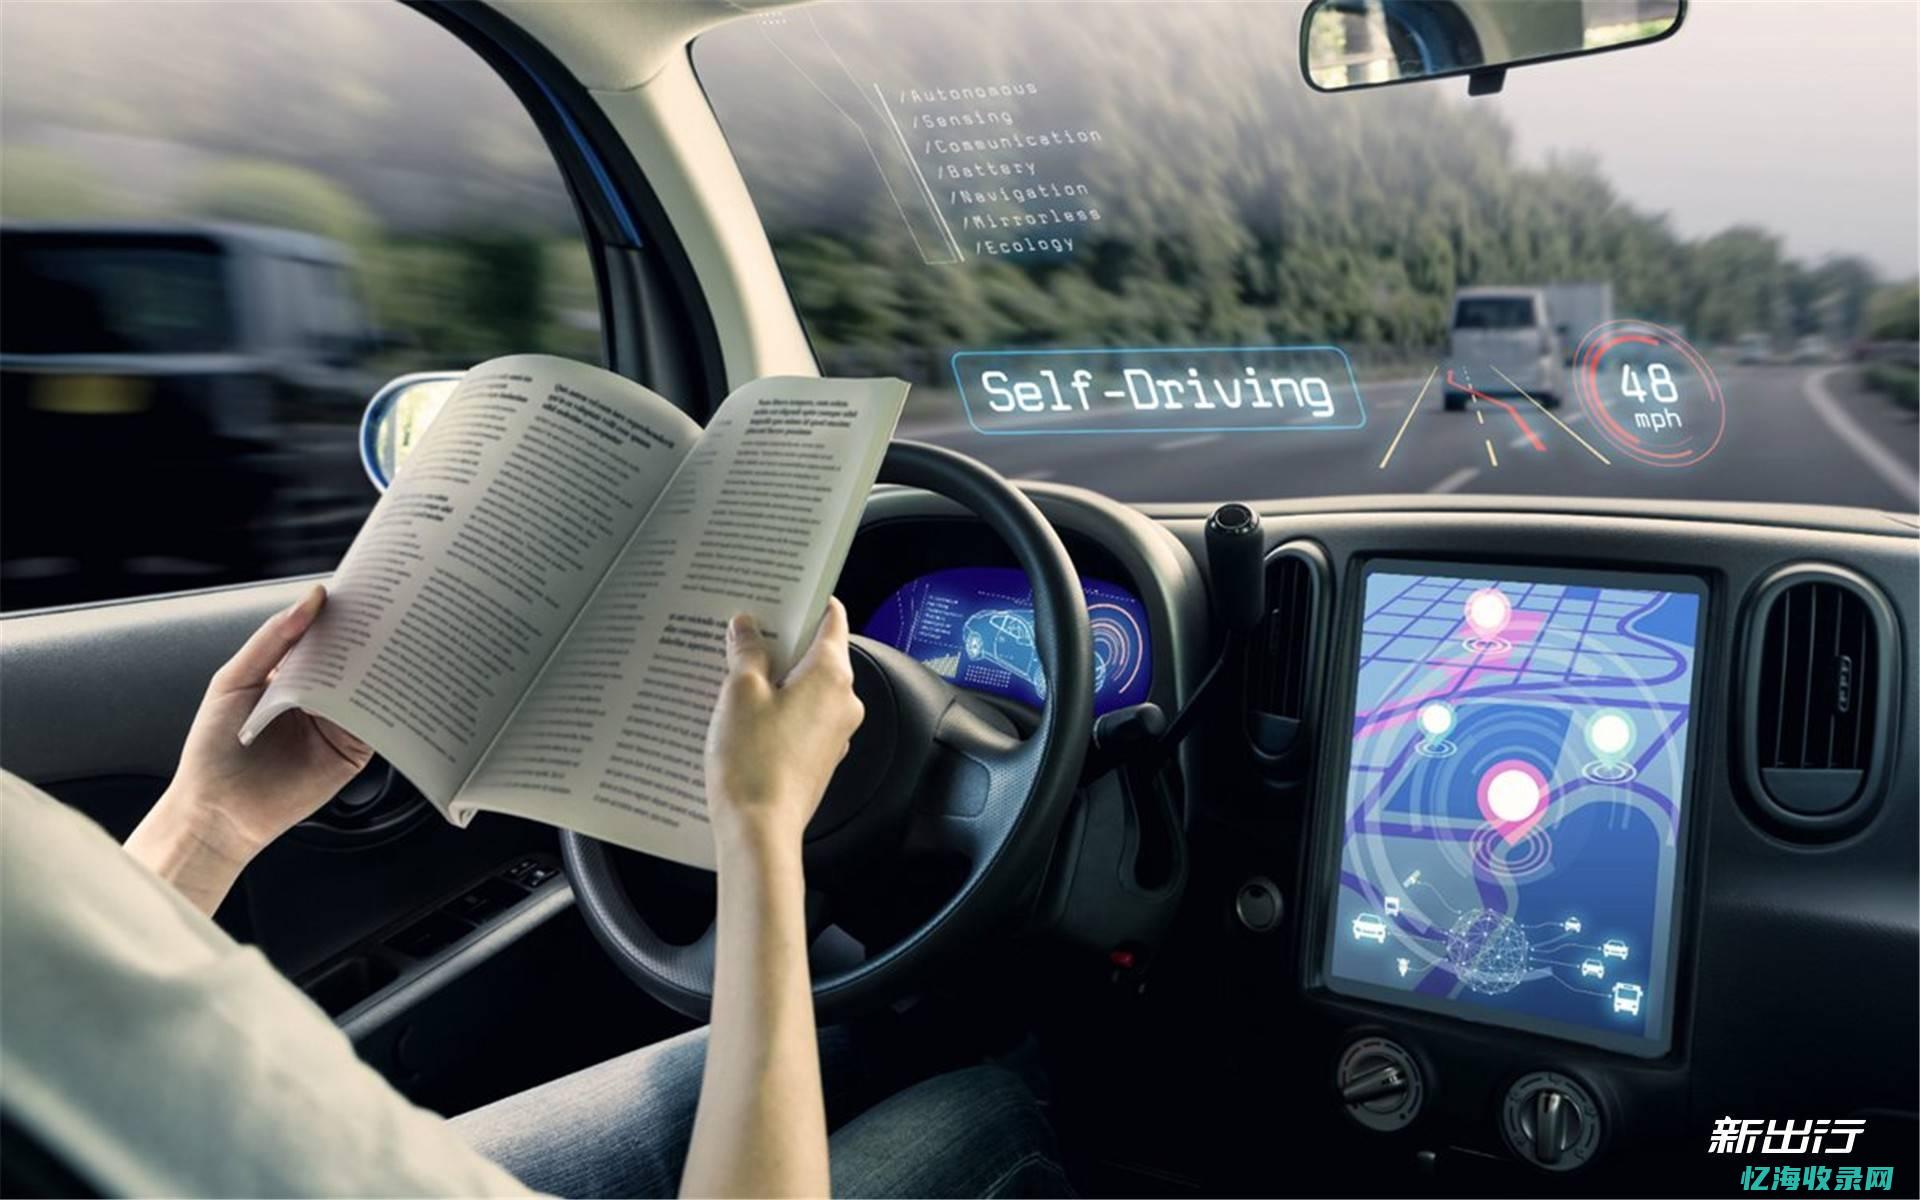 具备完全自动驾驶能力-吉利发布SEA浩瀚智能进化体验架构 (具备完全自动化的条件)